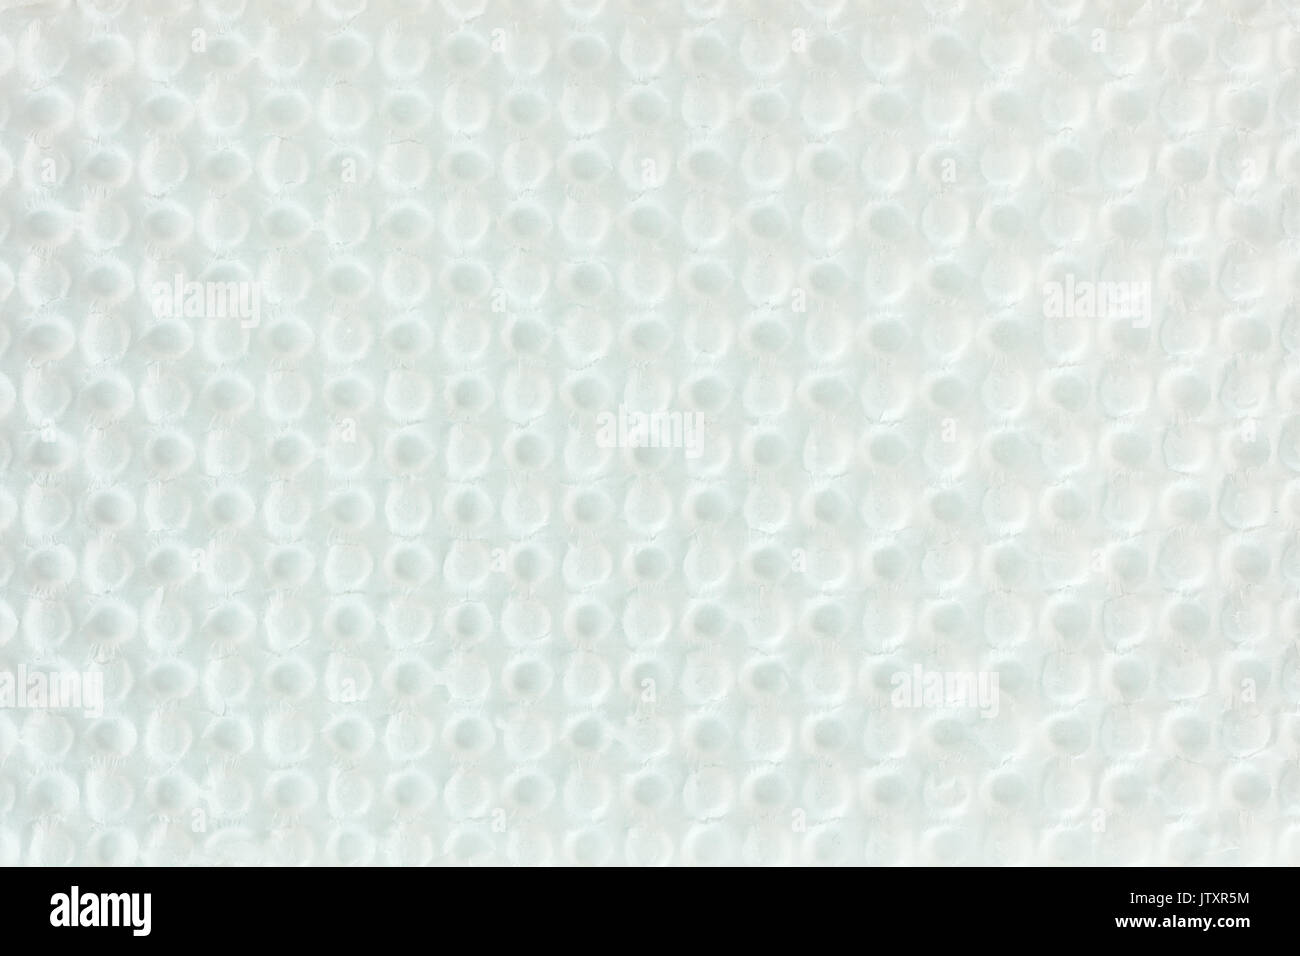 Weiß holprigen Verpackung Karton Textur. Abstrakte helle Oberfläche Hintergrund. Stockfoto